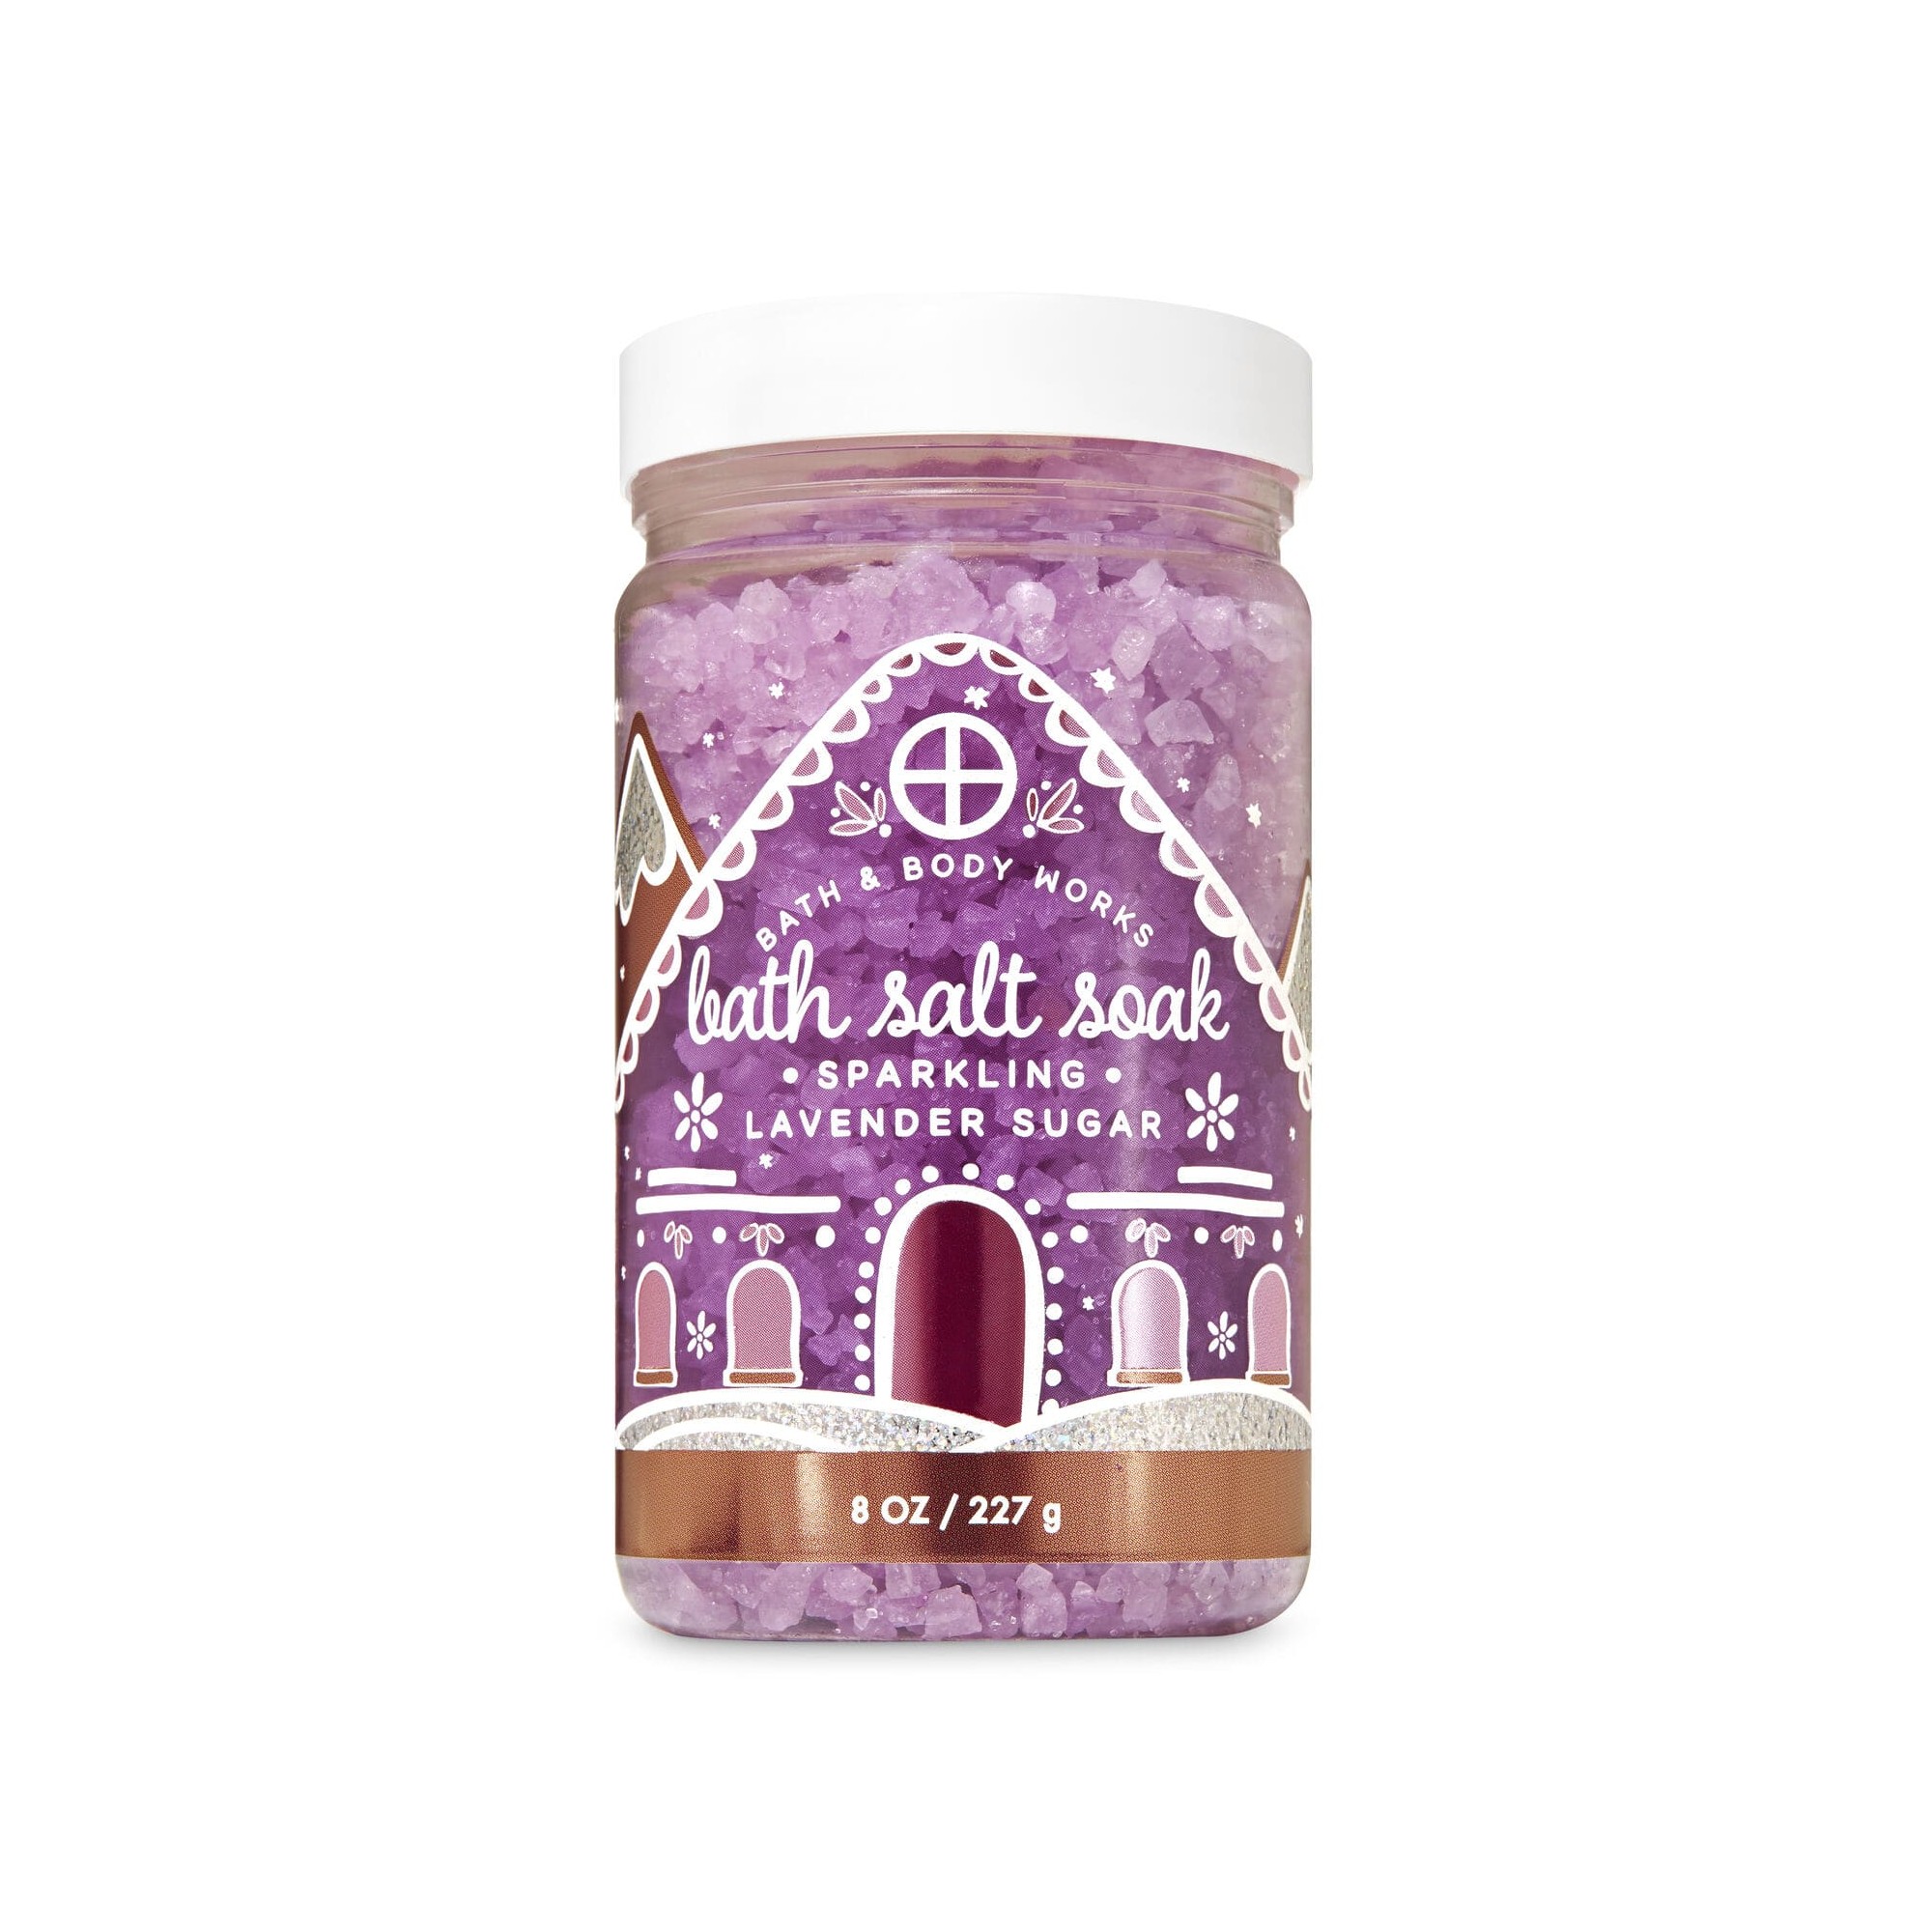 Bath & Body Works Sparkling Lavender Sugar Bath Salt Soak